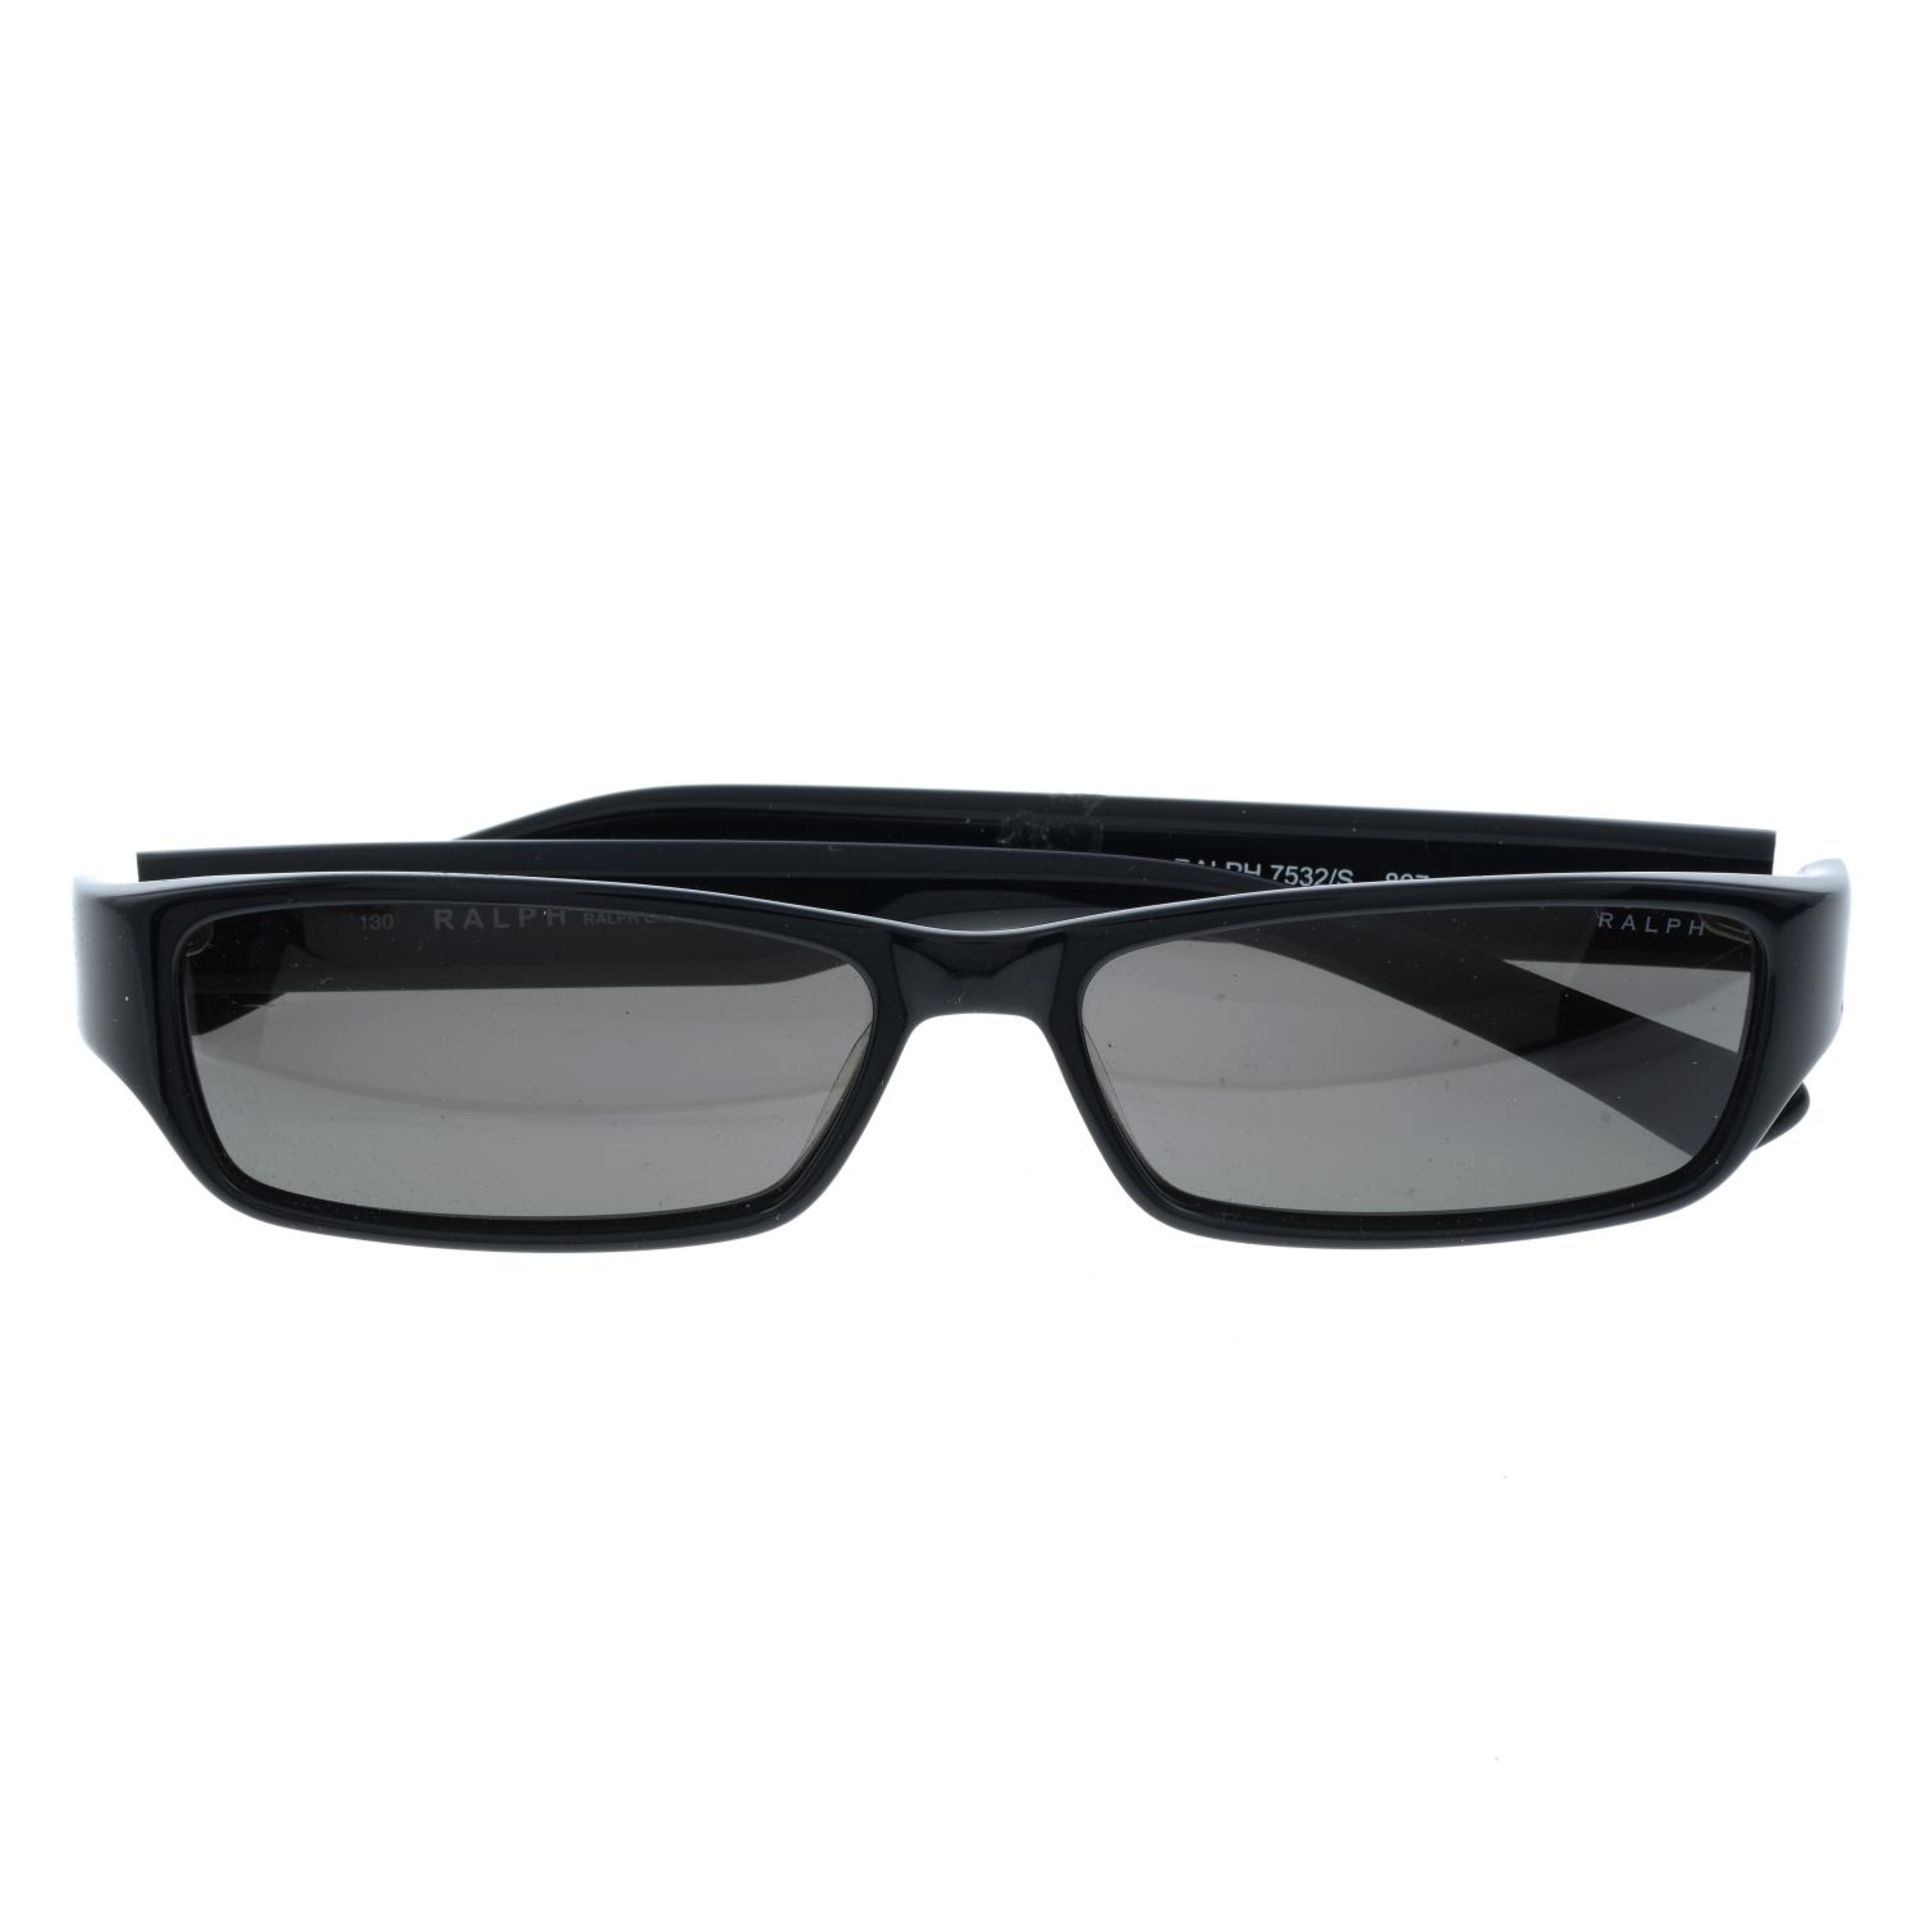 RALPH BY RALPH LAUREN - a pair of black sunglasses.